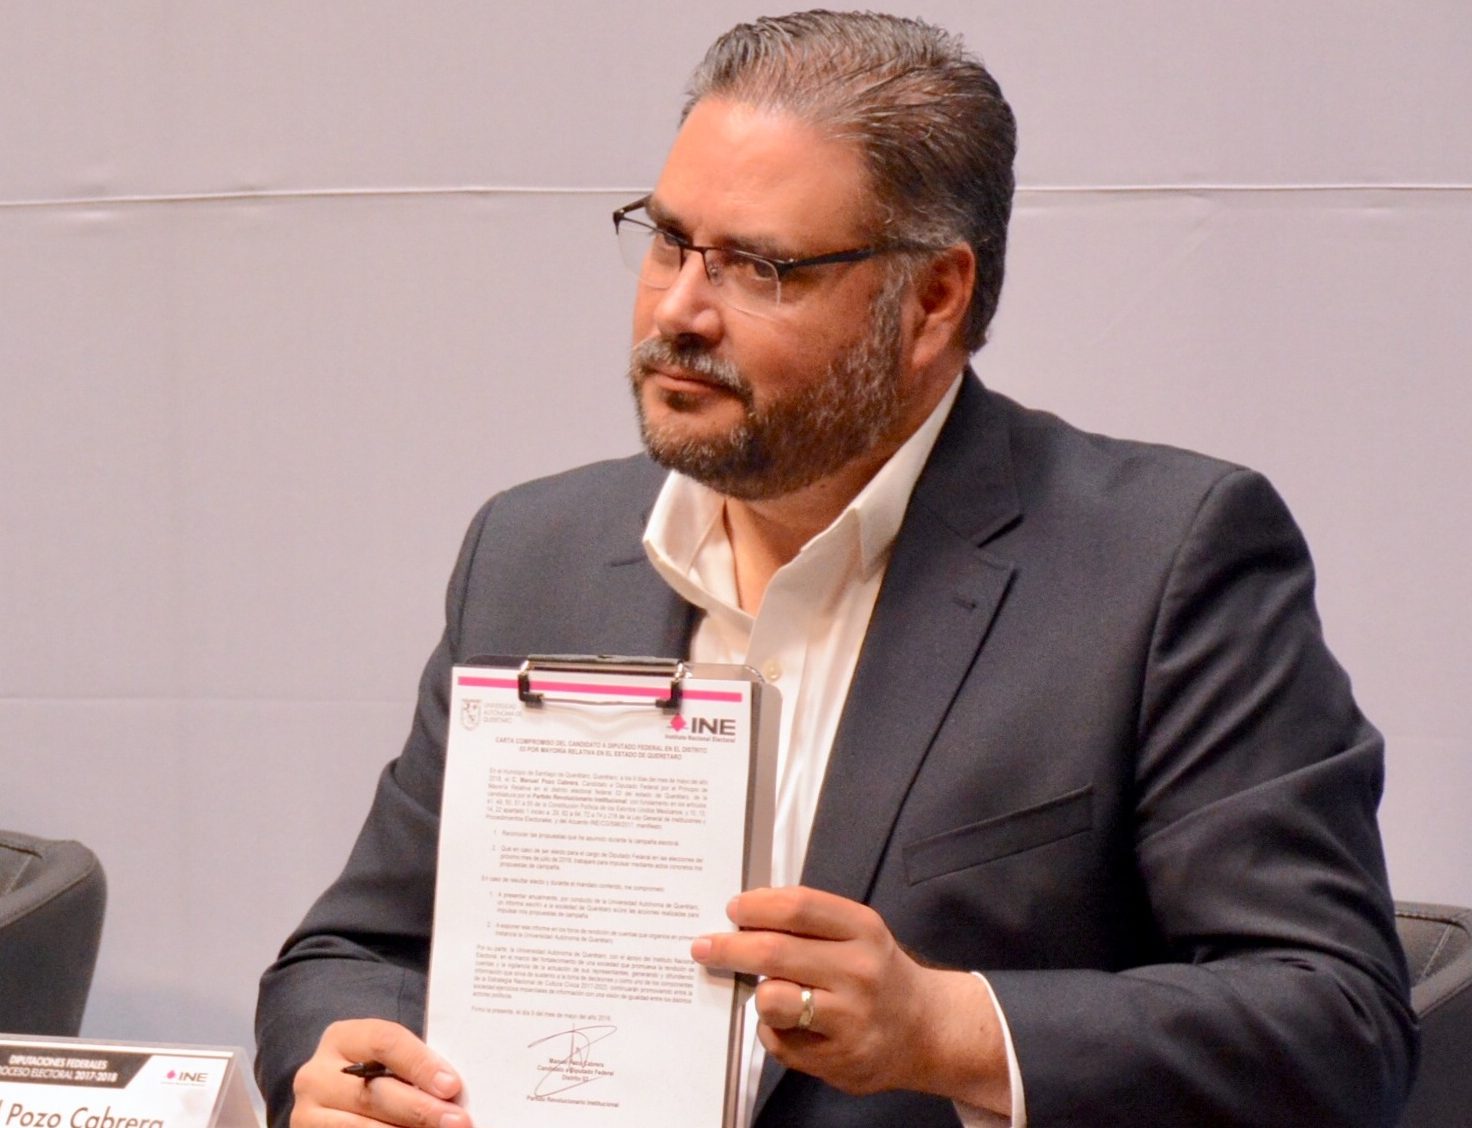 “Desconocimiento total de su distrito, acusa el candidato del PAN”: Pozo Cabrera